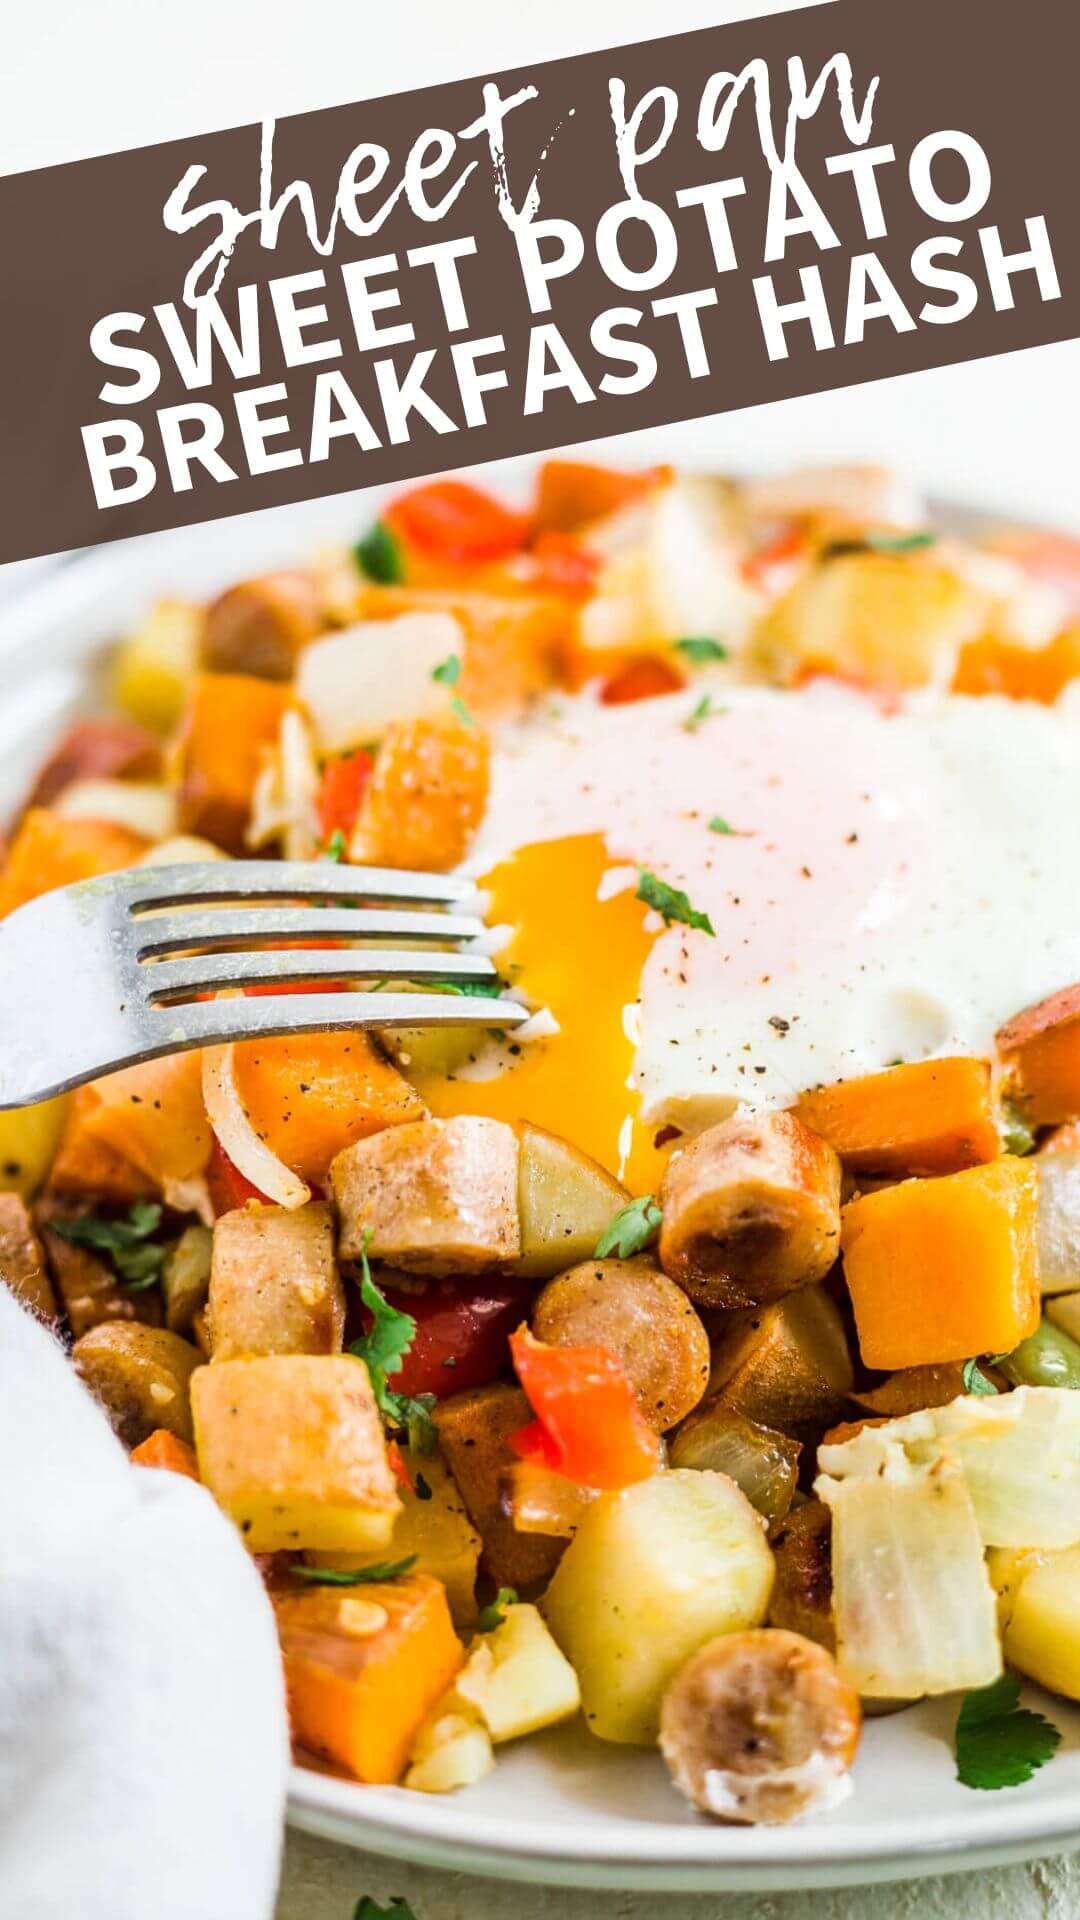 Sheet Pan Breakfast - Sheet Pan Sweet Potato Breakfast Hash